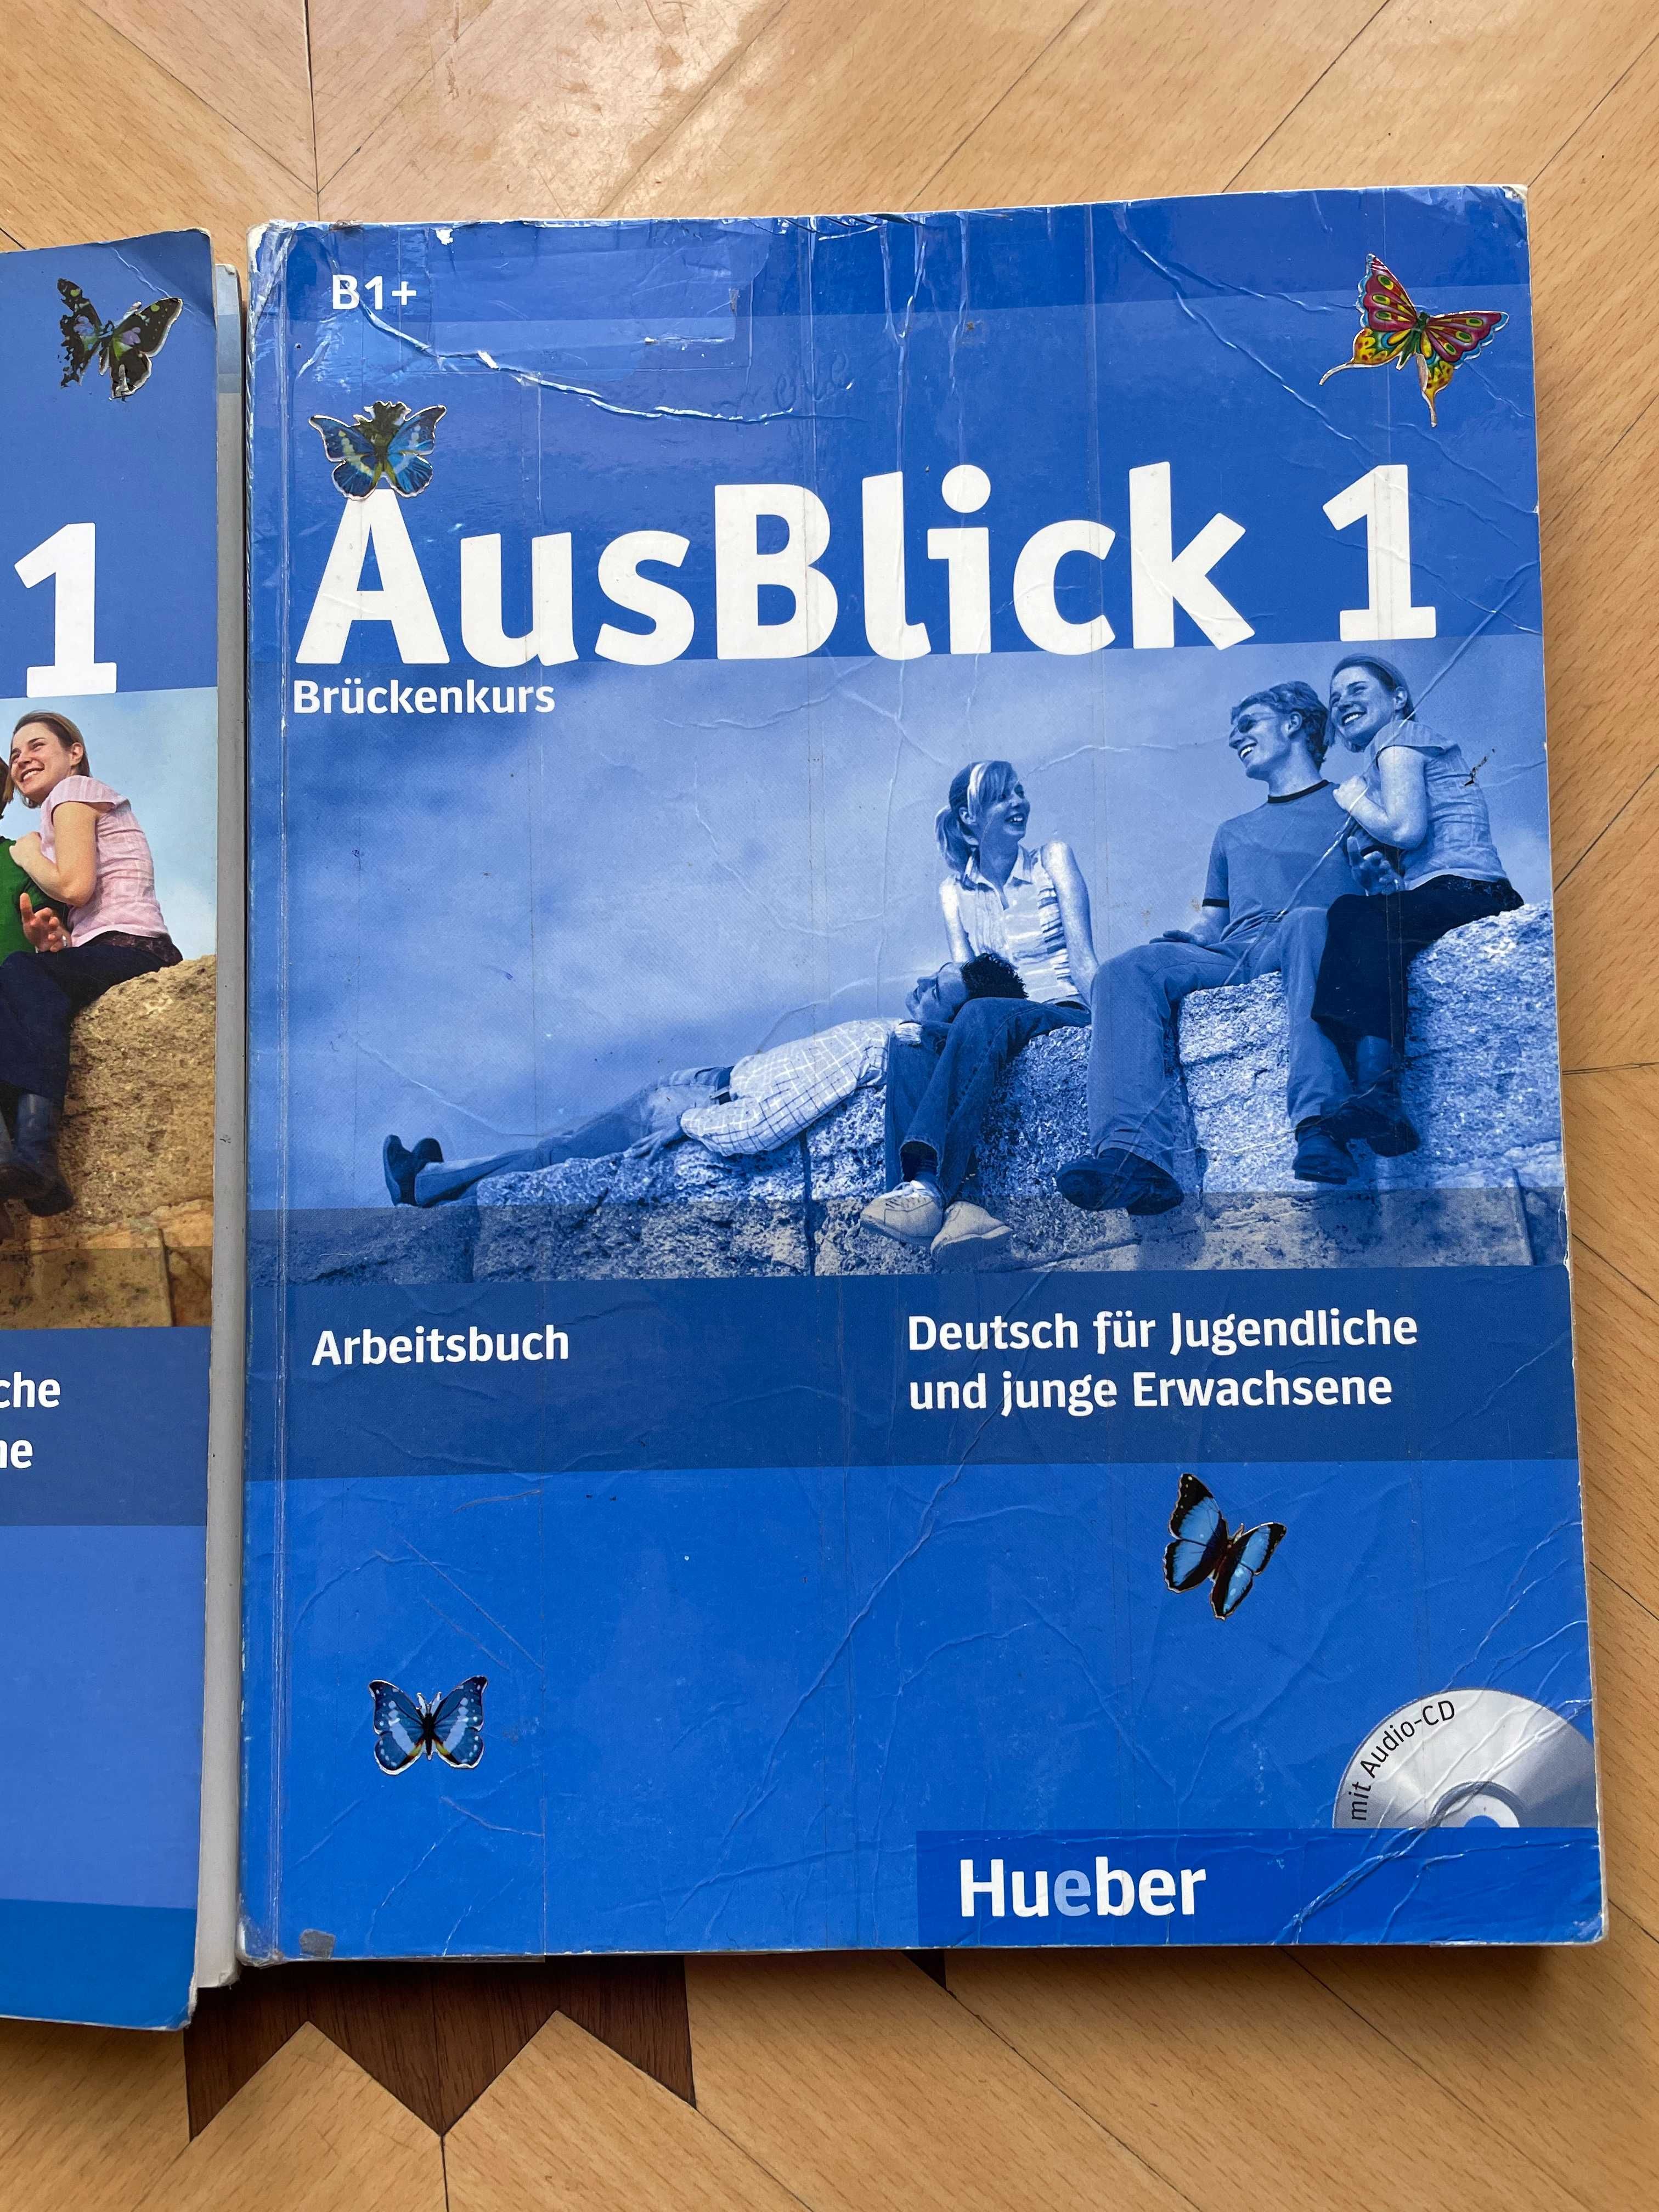 Німецька мова  AusBlick  Kursbuch + Arbeitsbuch  Hueber